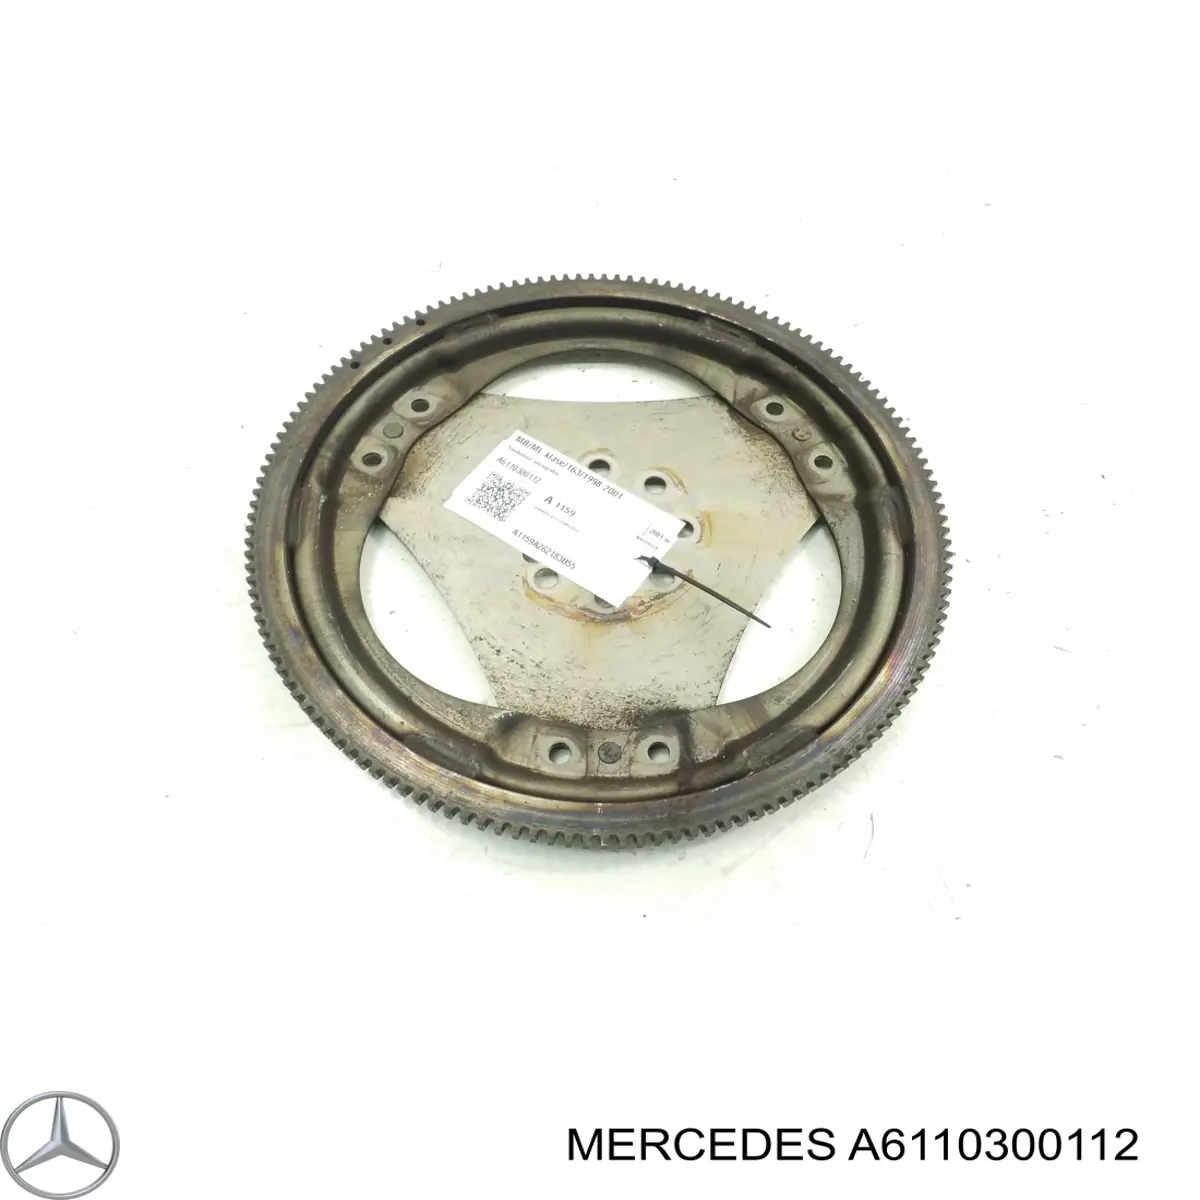 6110300112 Mercedes volante de motor